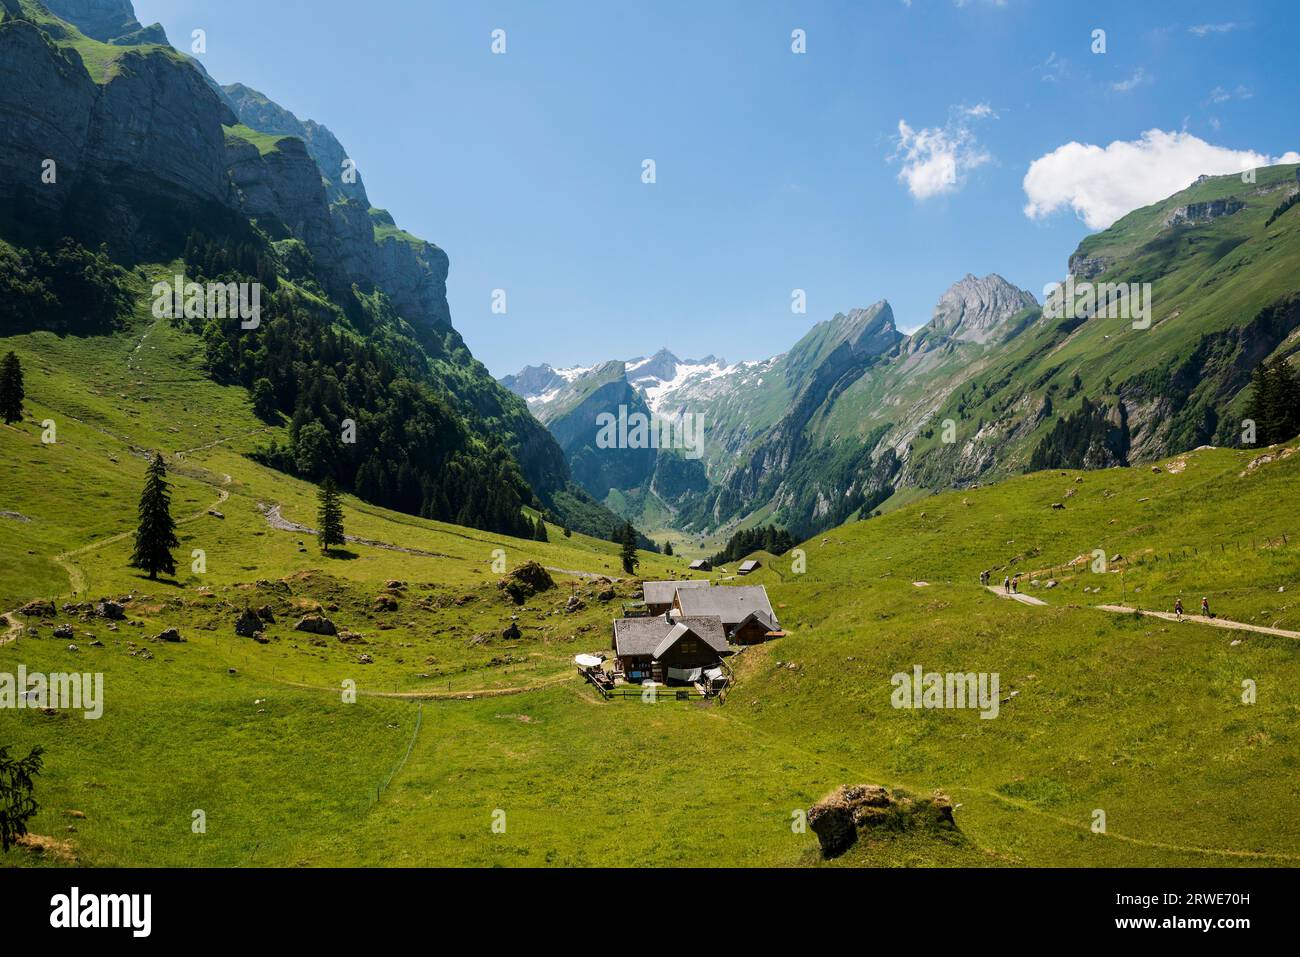 Steep mountains and alpine pasture, Seealpsee, Wasserauen, Alpstein, Appenzell Alps, Canton Appenzell Innerrhoden, Switzerland Stock Photo